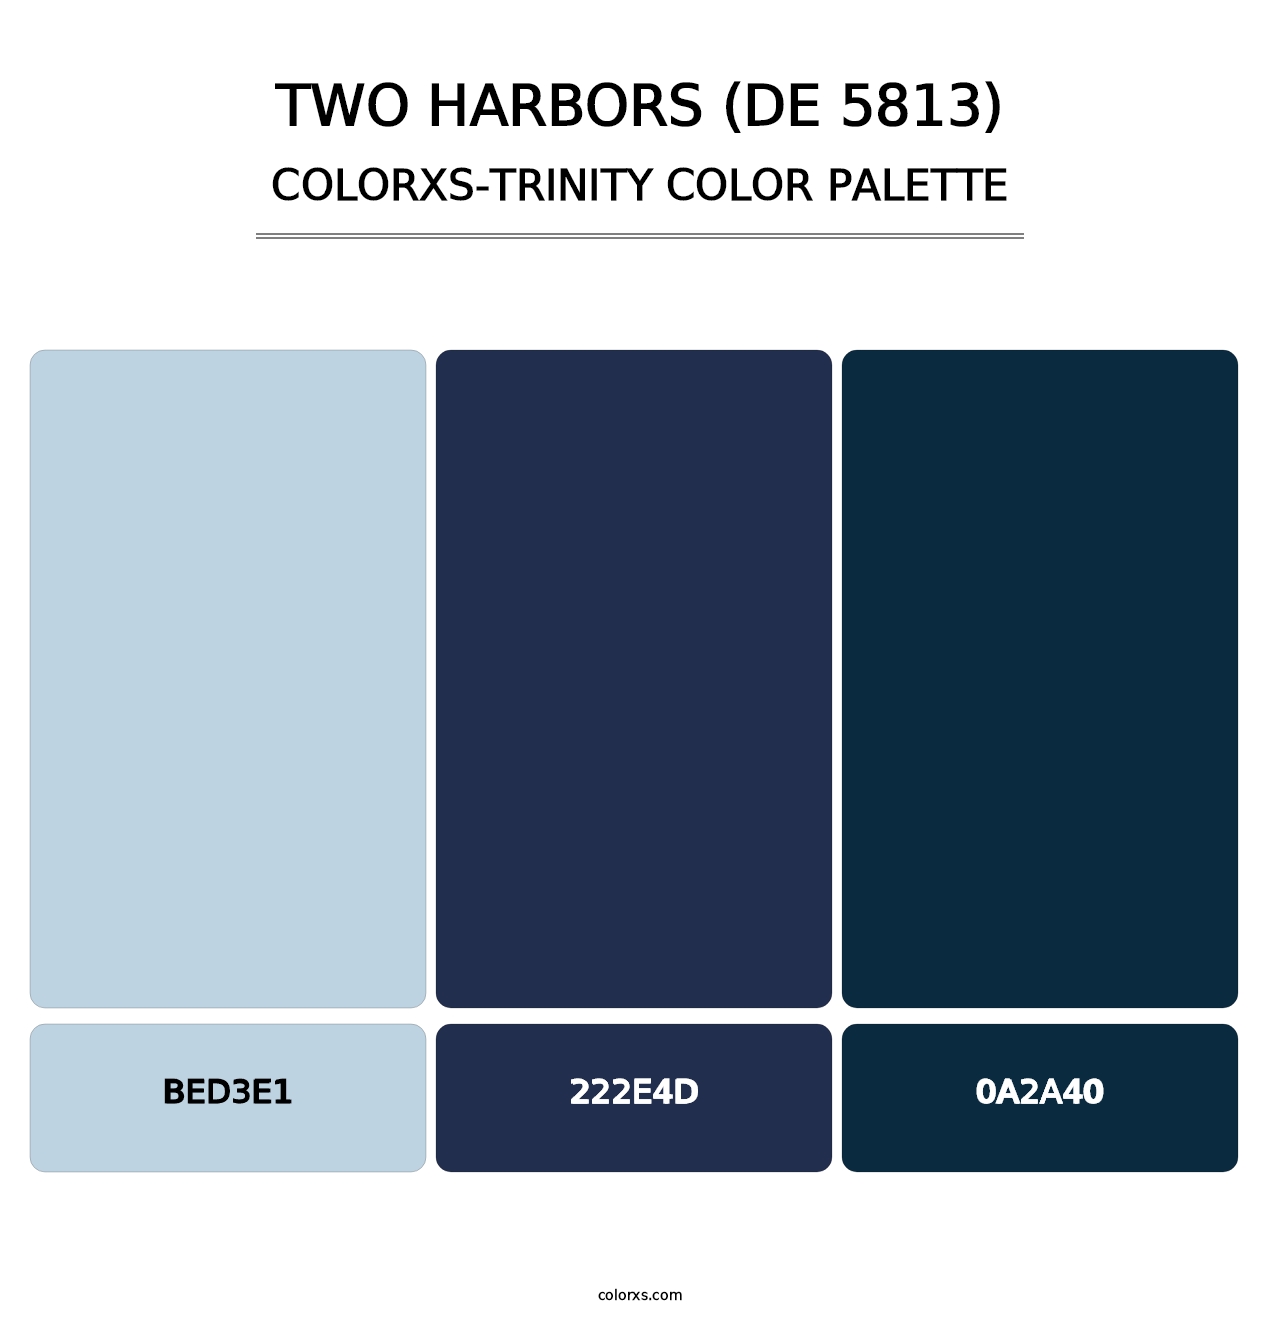 Two Harbors (DE 5813) - Colorxs Trinity Palette